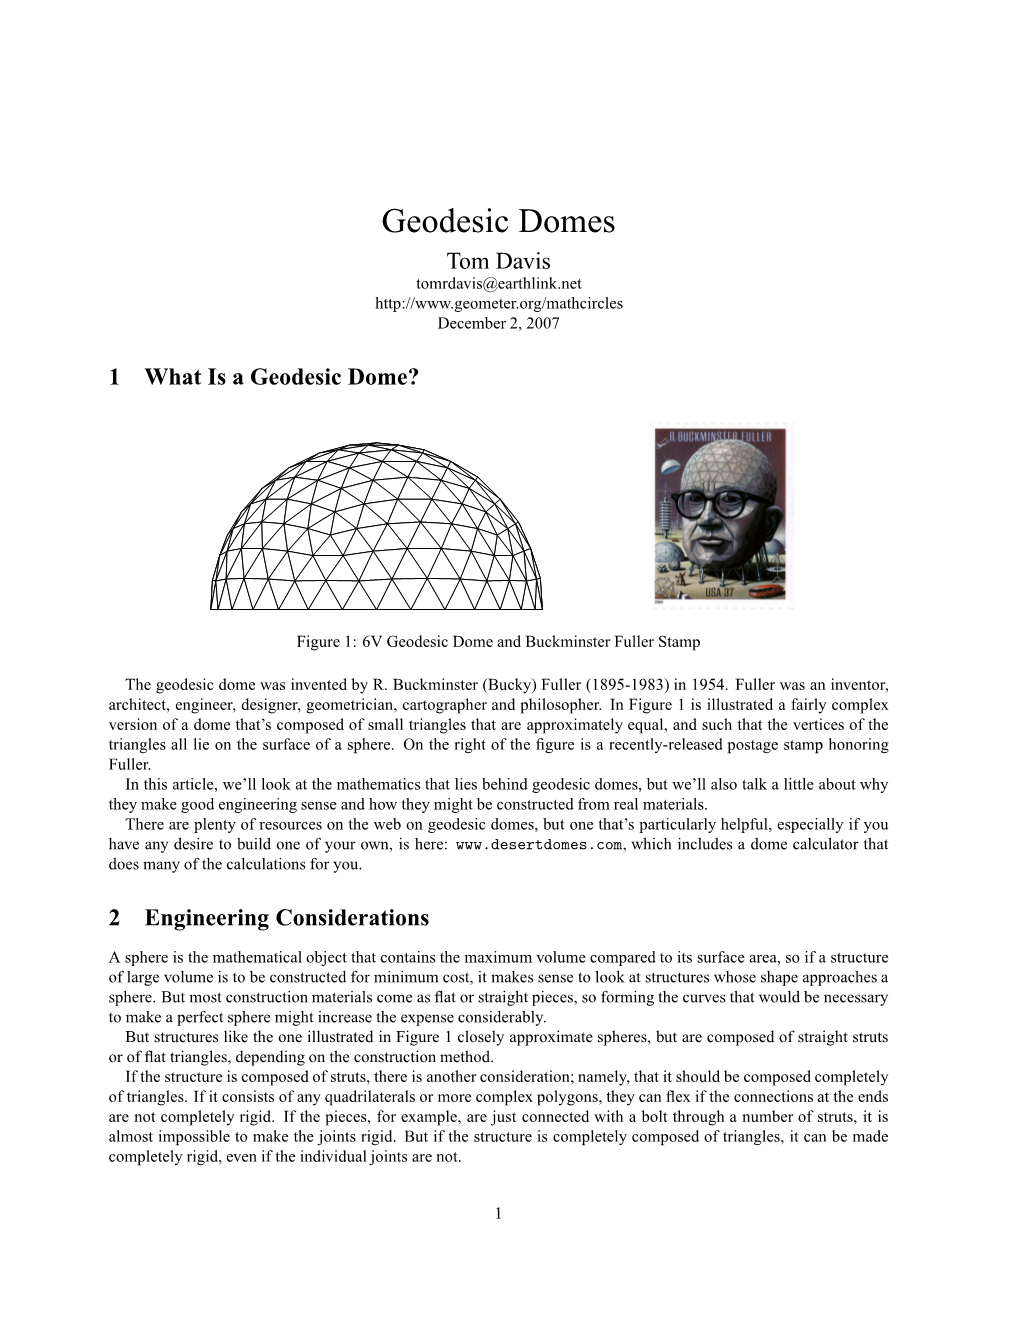 Geodesic Domes Tom Davis Tomrdavis@Earthlink.Net December 2, 2007